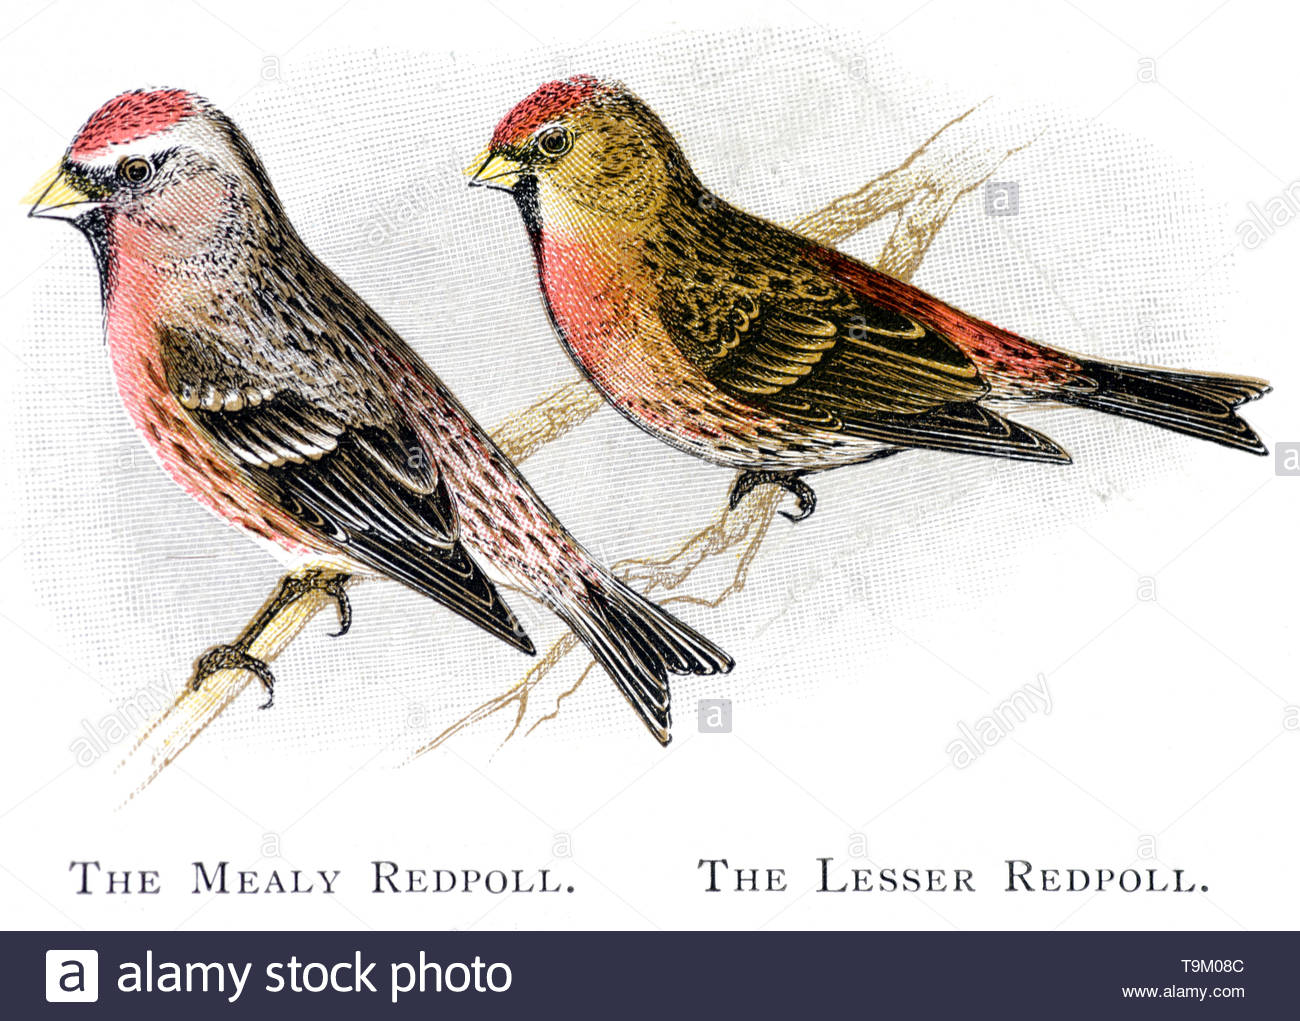 Farinoso Redpoll (Carduelis flammea) e Lesser Redpoll (Carduelis cabaret), Illustrazione vintage pubblicato in 1898 Foto Stock